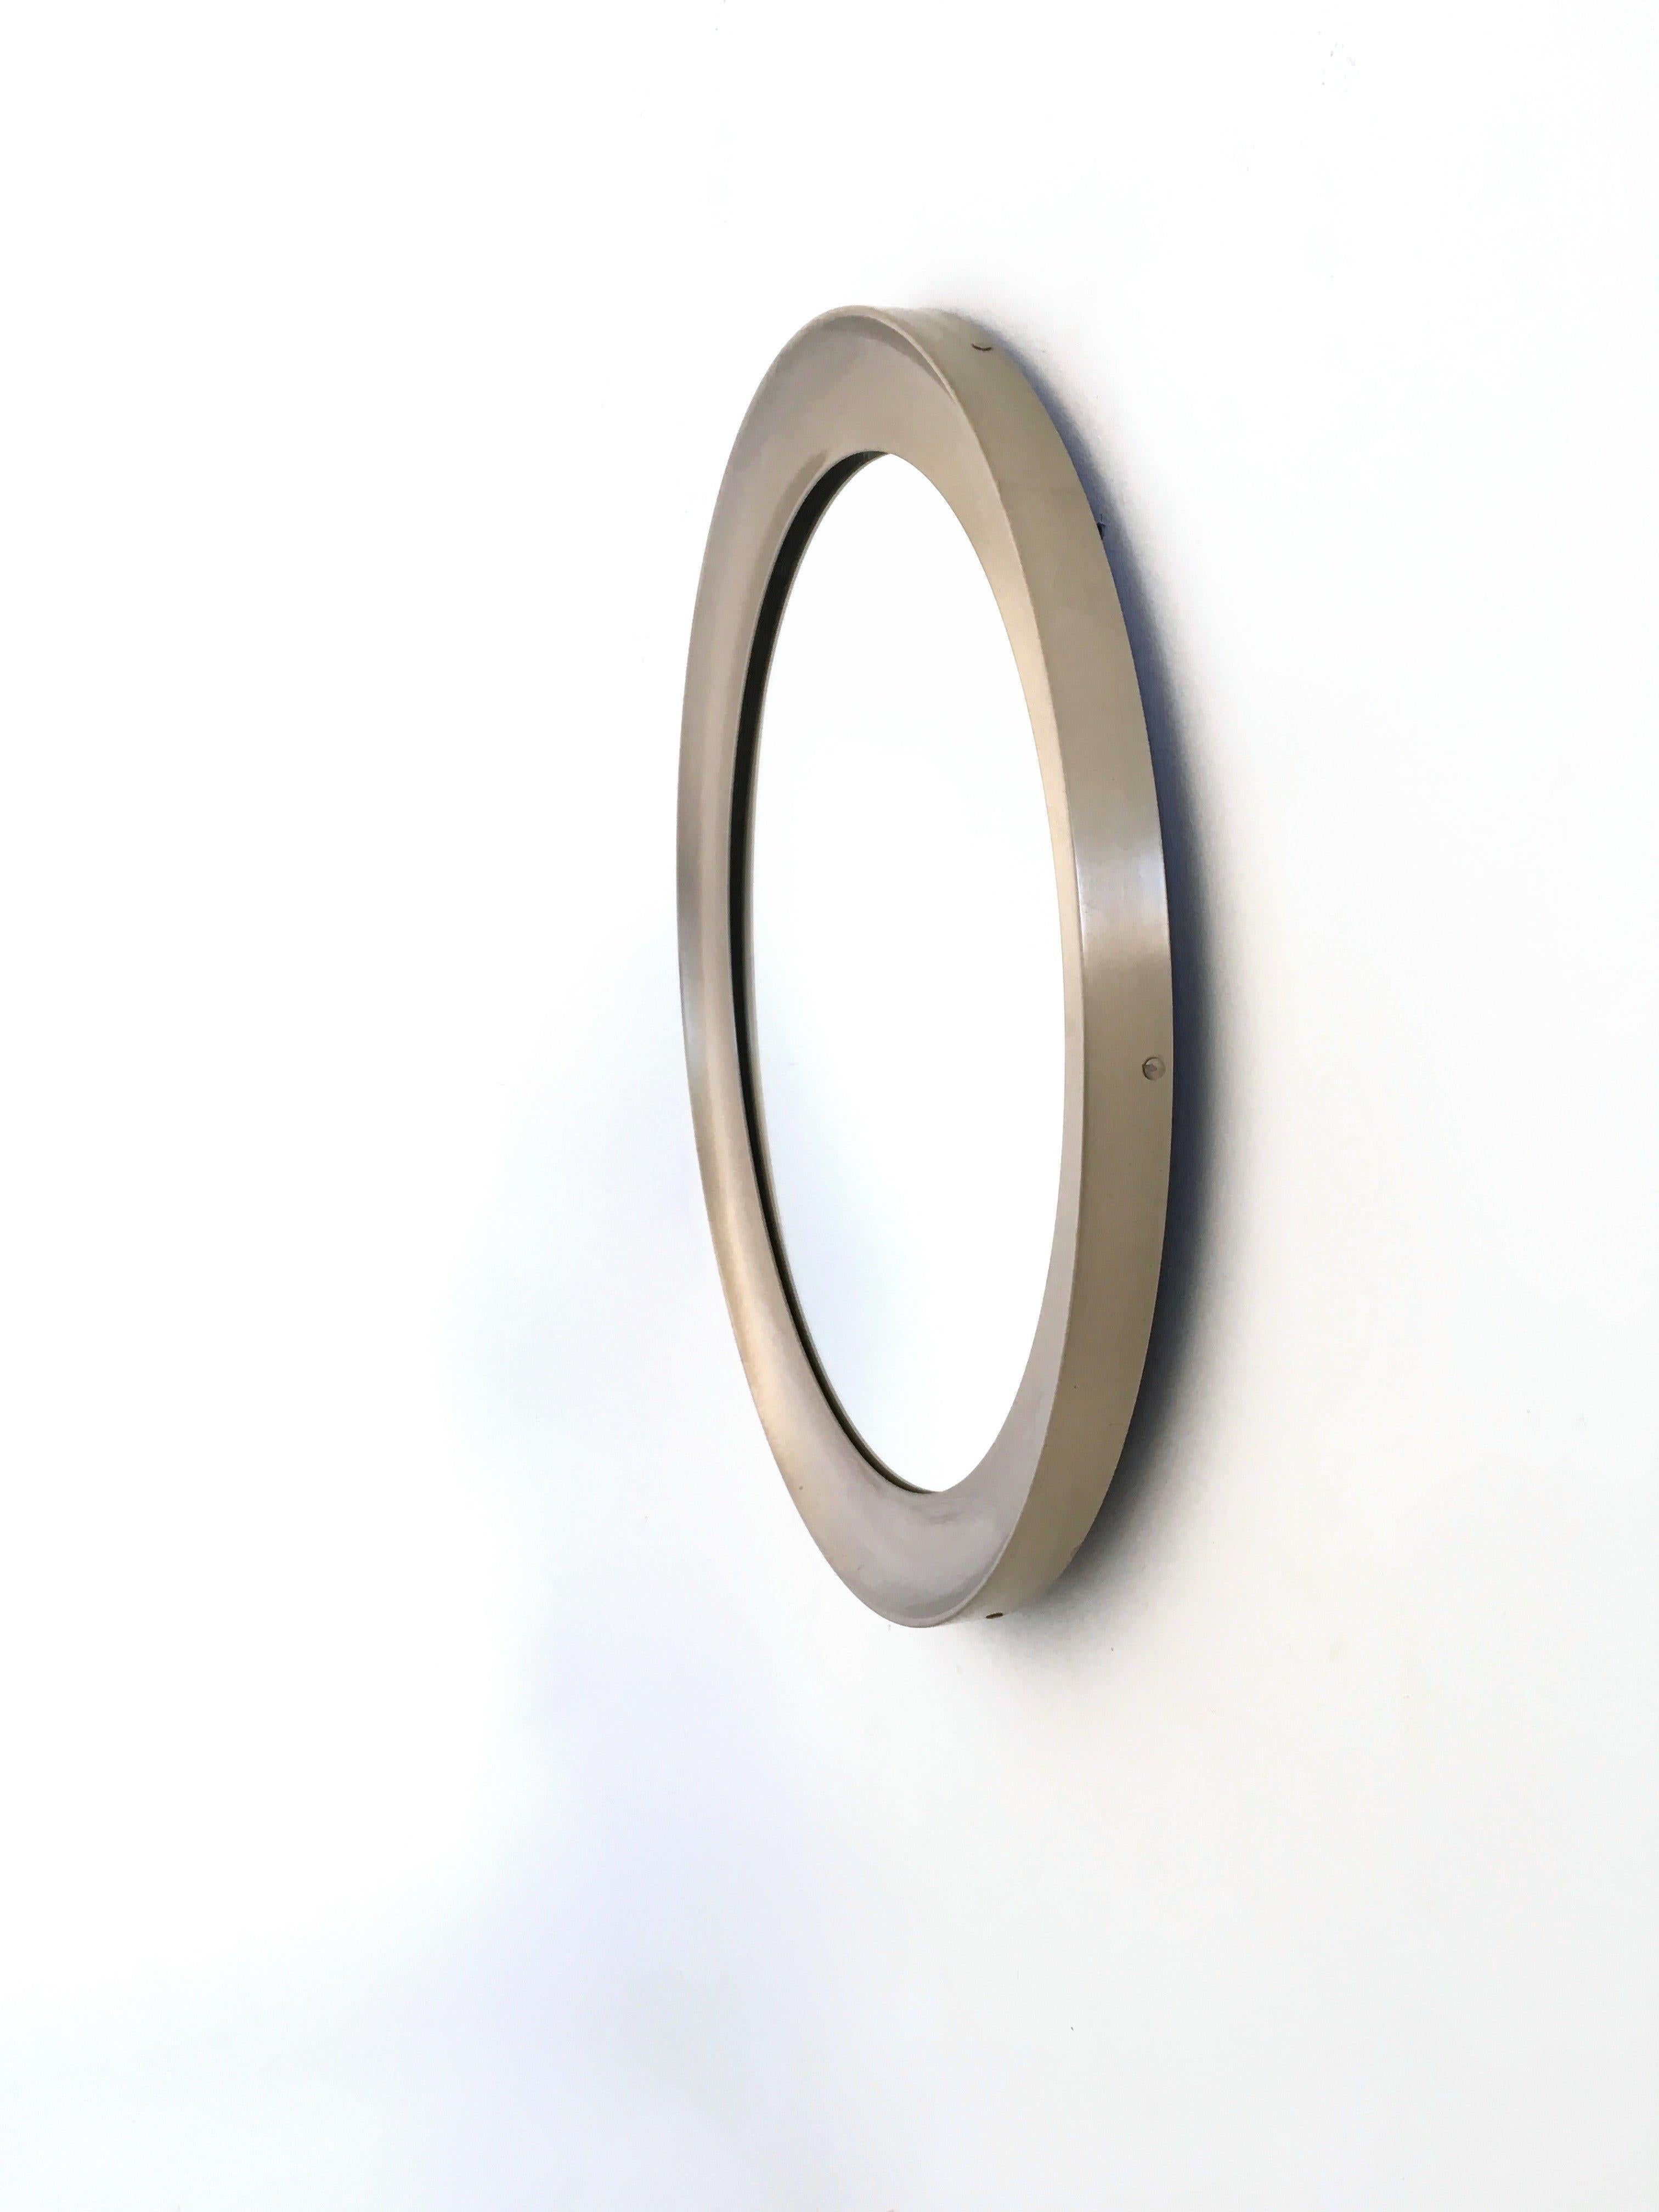 Hergestellt in Italien, 1950er Jahre. 
Diese Spiegel haben einen runden Stahlrahmen.
Ihre Besonderheit ist ihr Durchmesser: Für die Produktion von Artemide sind sie ziemlich groß.
Sie können leichte Gebrauchsspuren aufweisen, da sie Vintage sind,